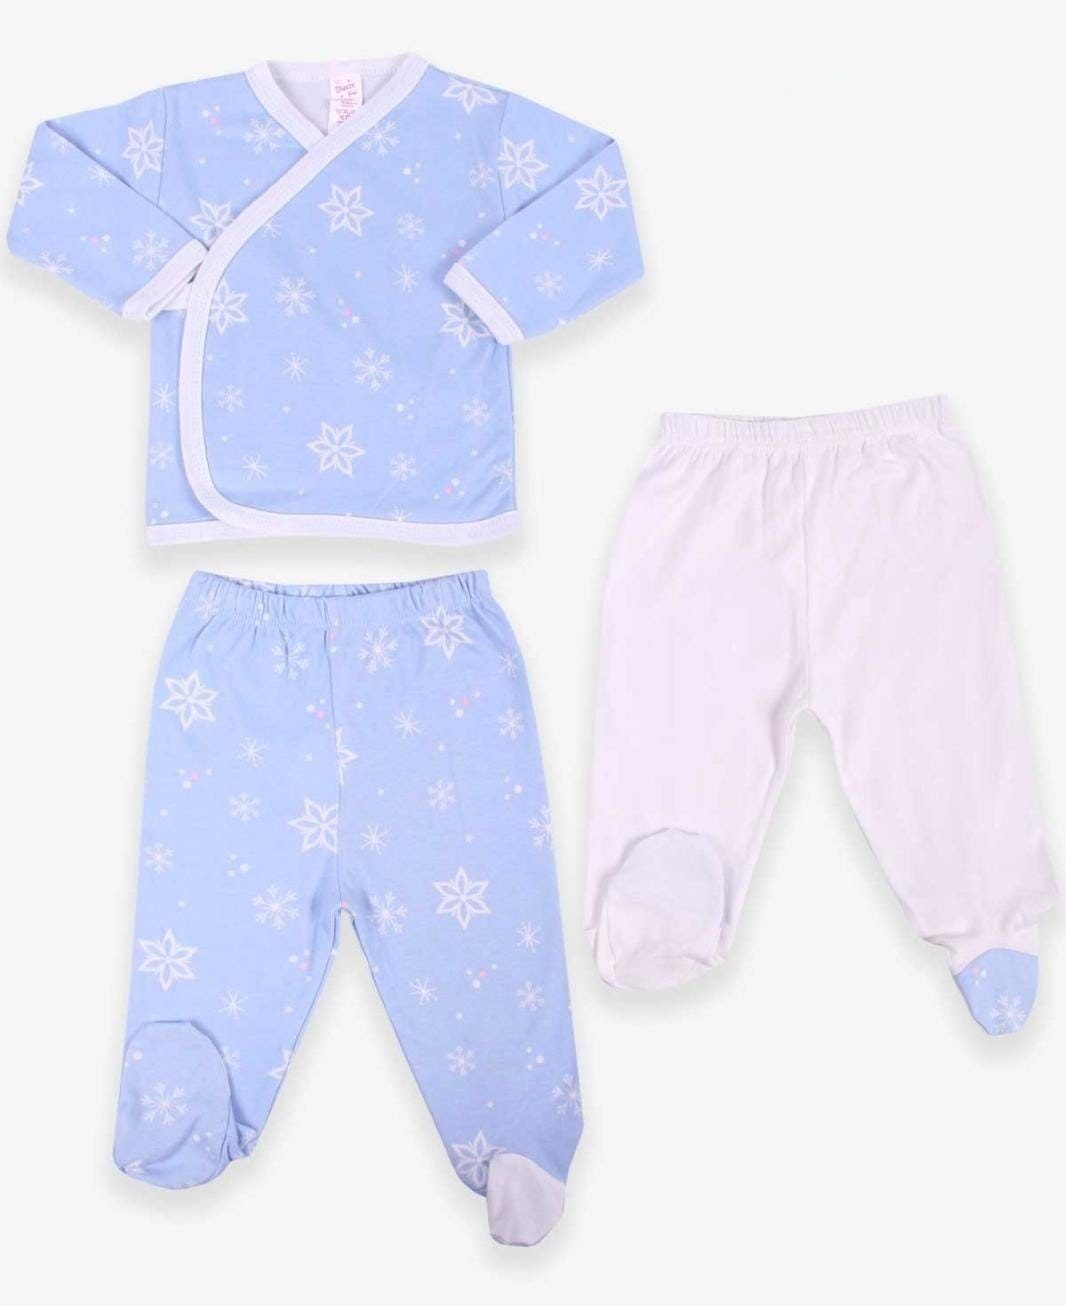 Oberteil, Designs Breeze Hellblau Design 3er 3Teiler (3er Baby Unterteile) Neugeborenen-Geschenkset Set, niedliche Sets Print